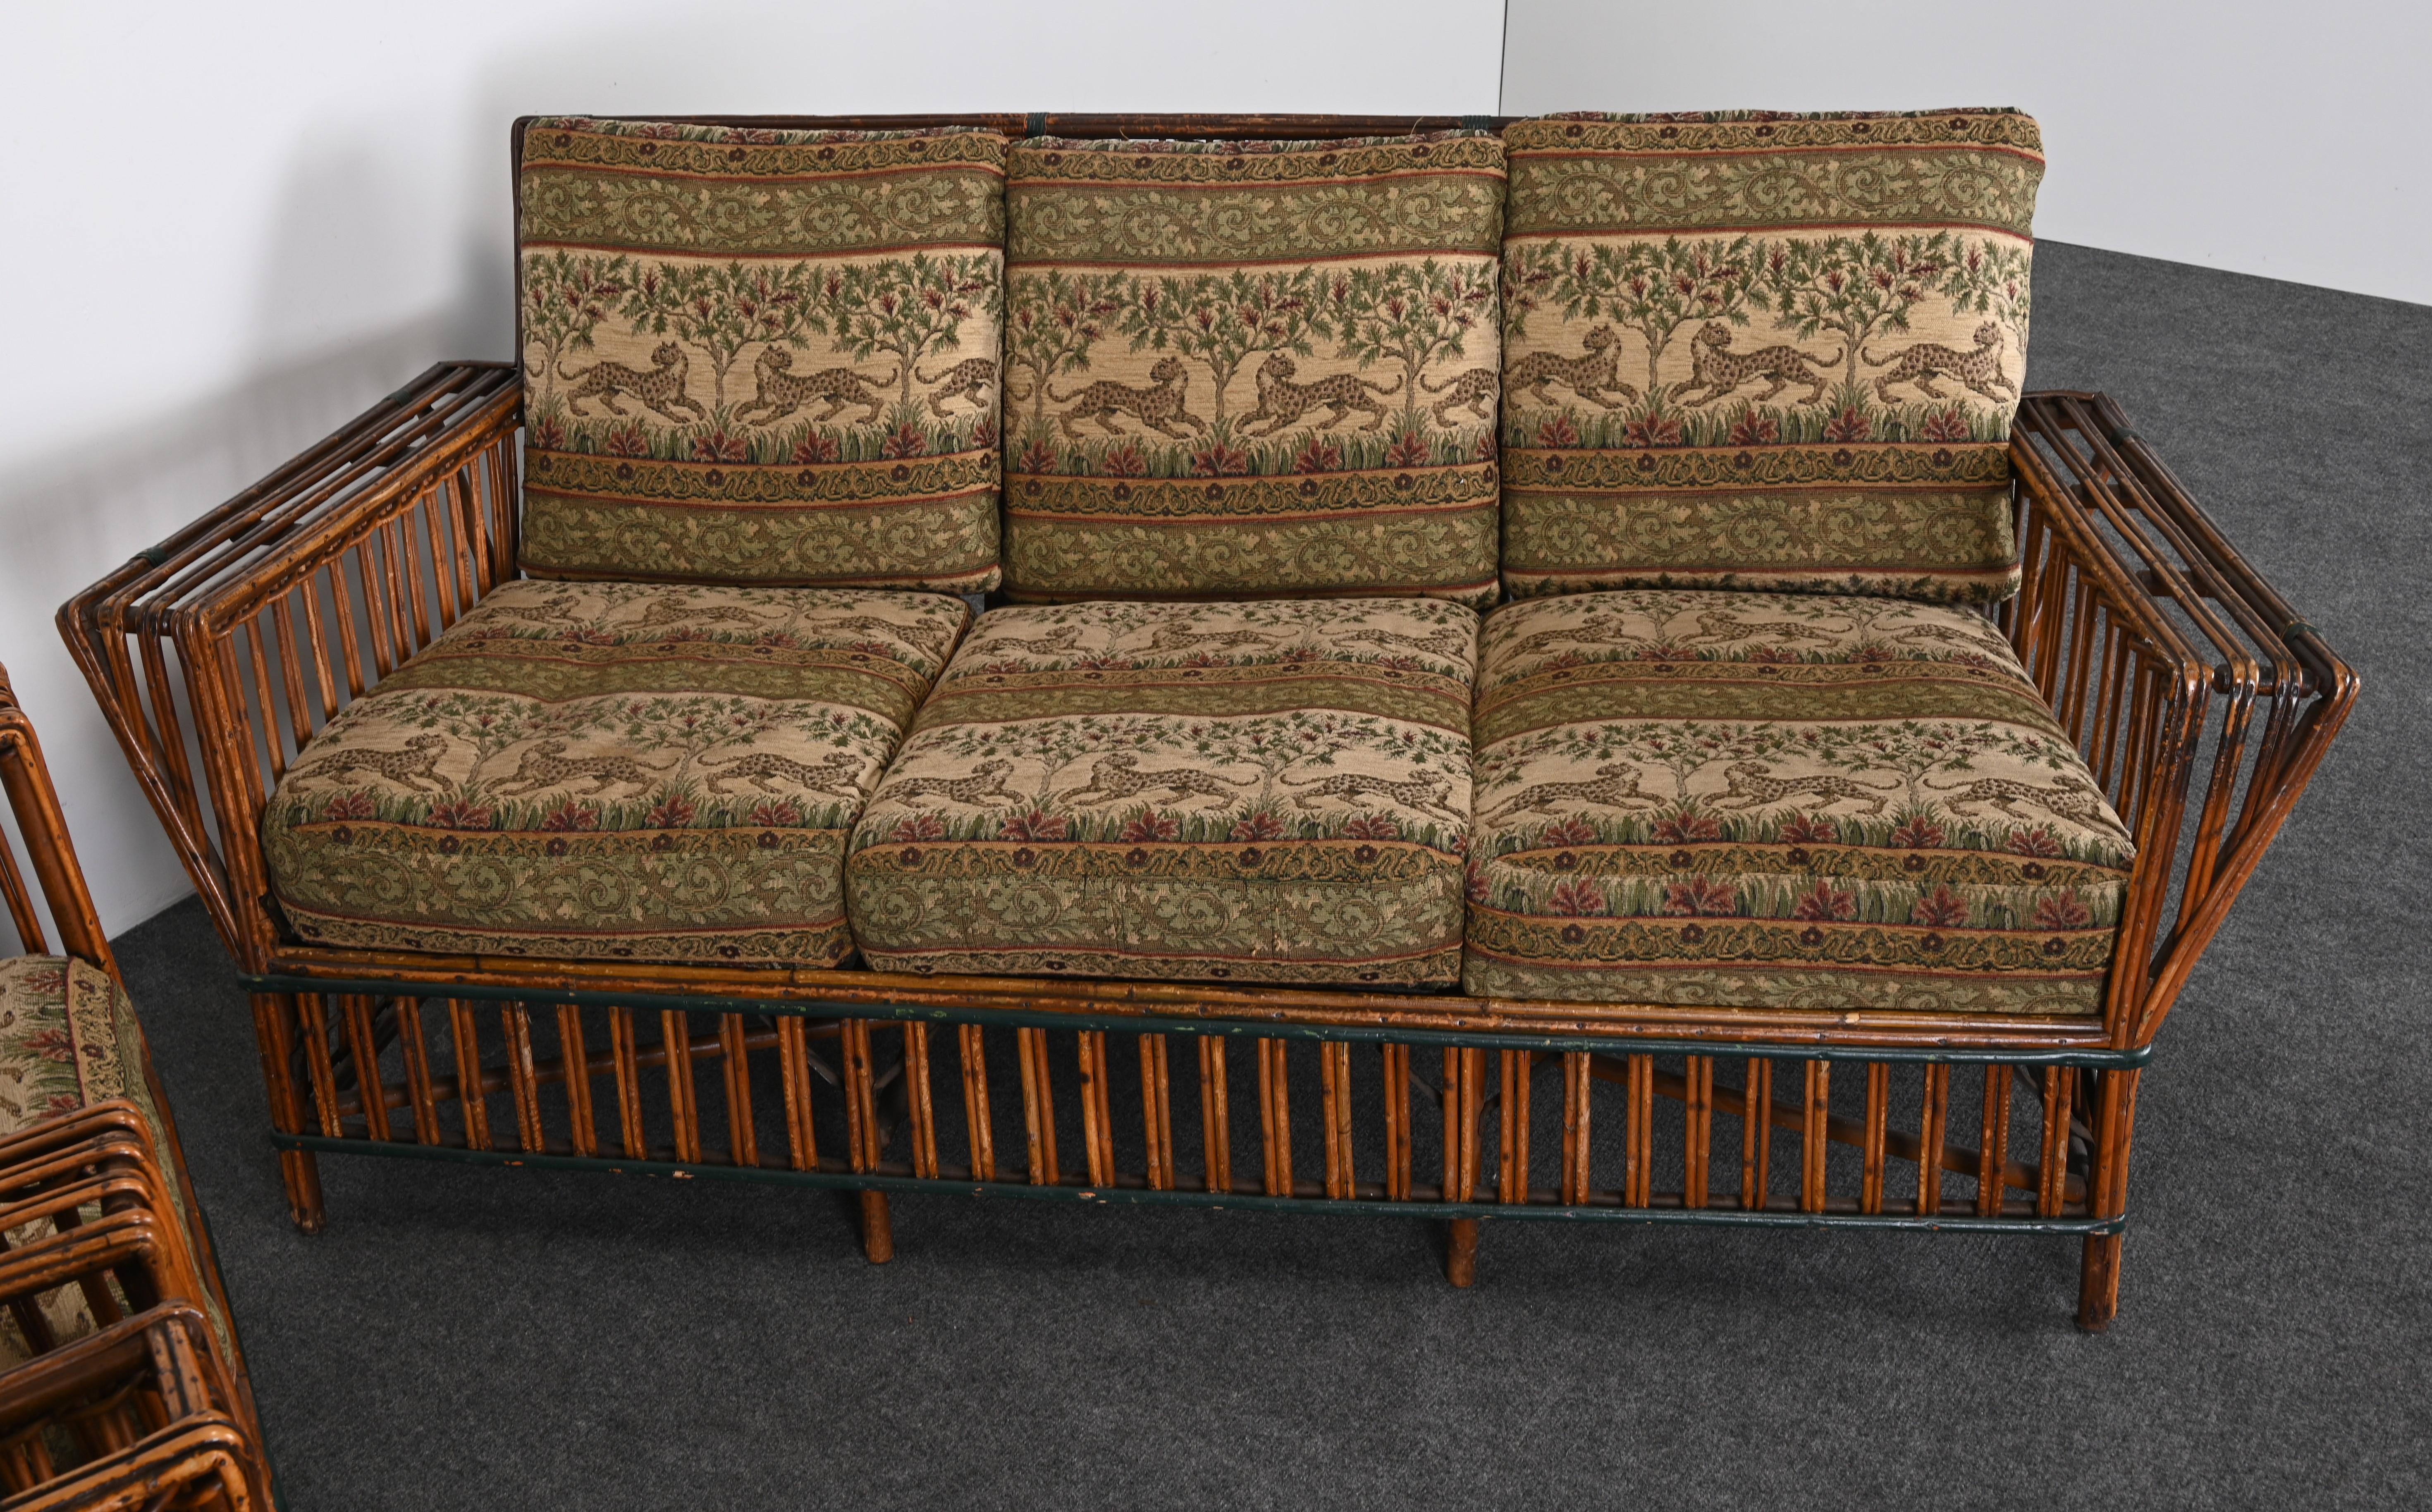 Art Deco geteilter Ypsilanti Stick Schilf Korbweide oder Sofa mit Paar Sessel, ca. 1930er Jahre (Art déco)